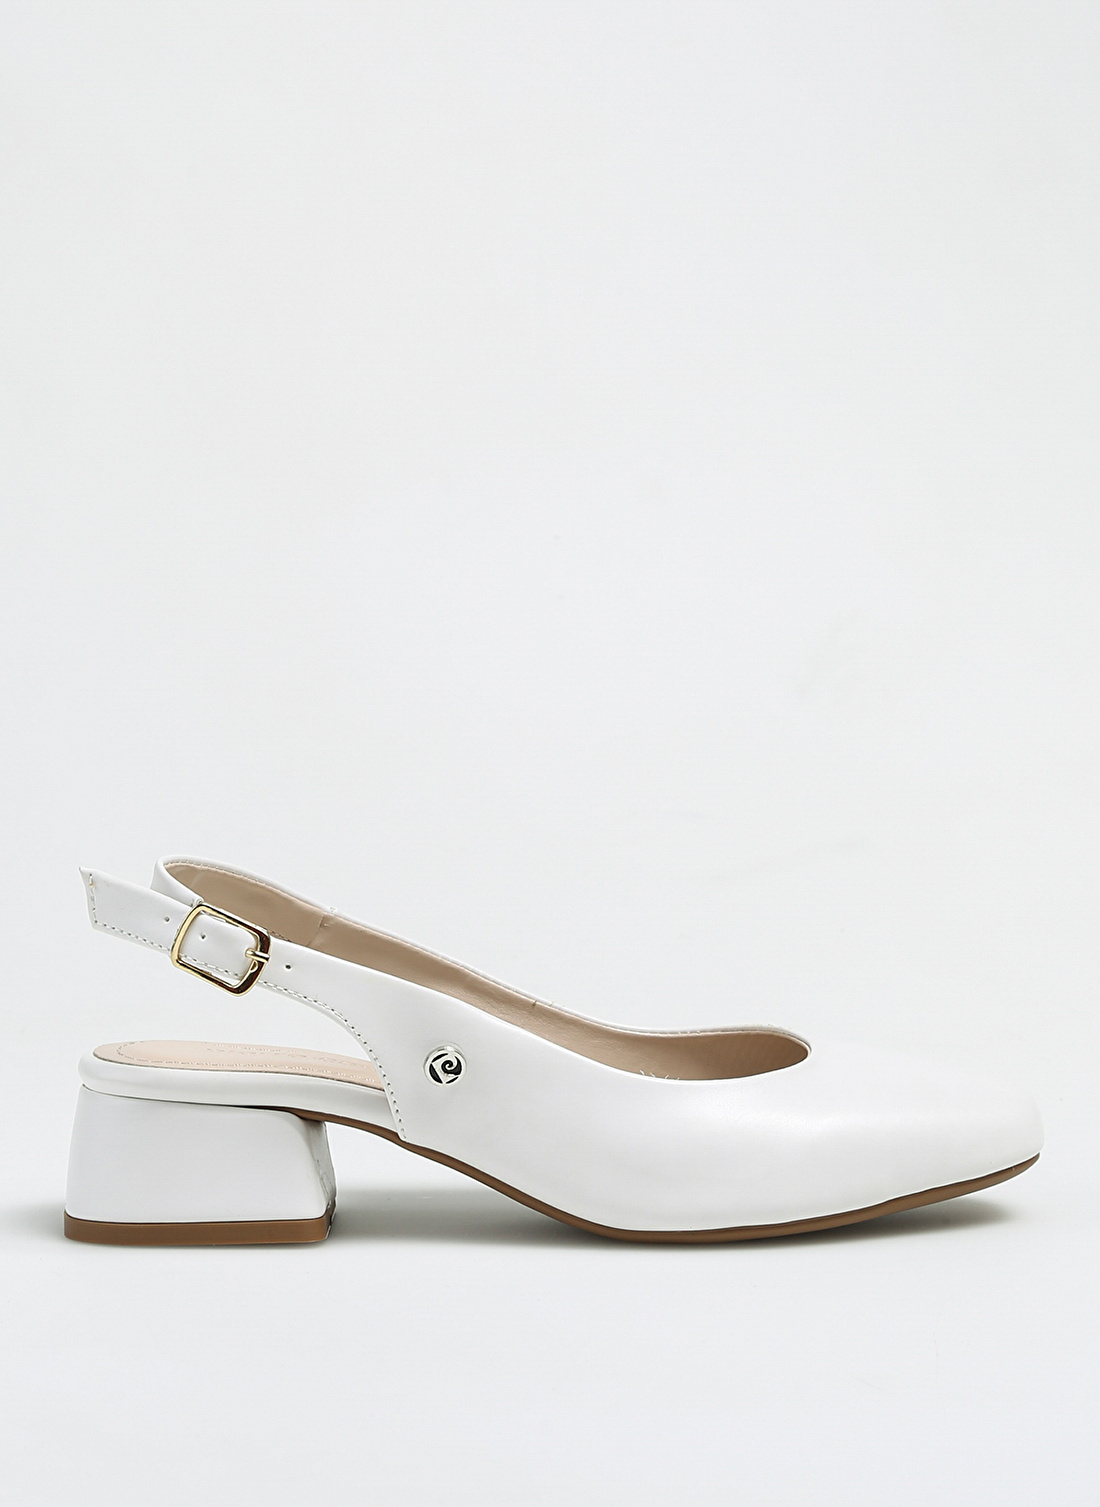 Pierre Cardin Beyaz Kadın Topuklu Ayakkabı PC-52272 